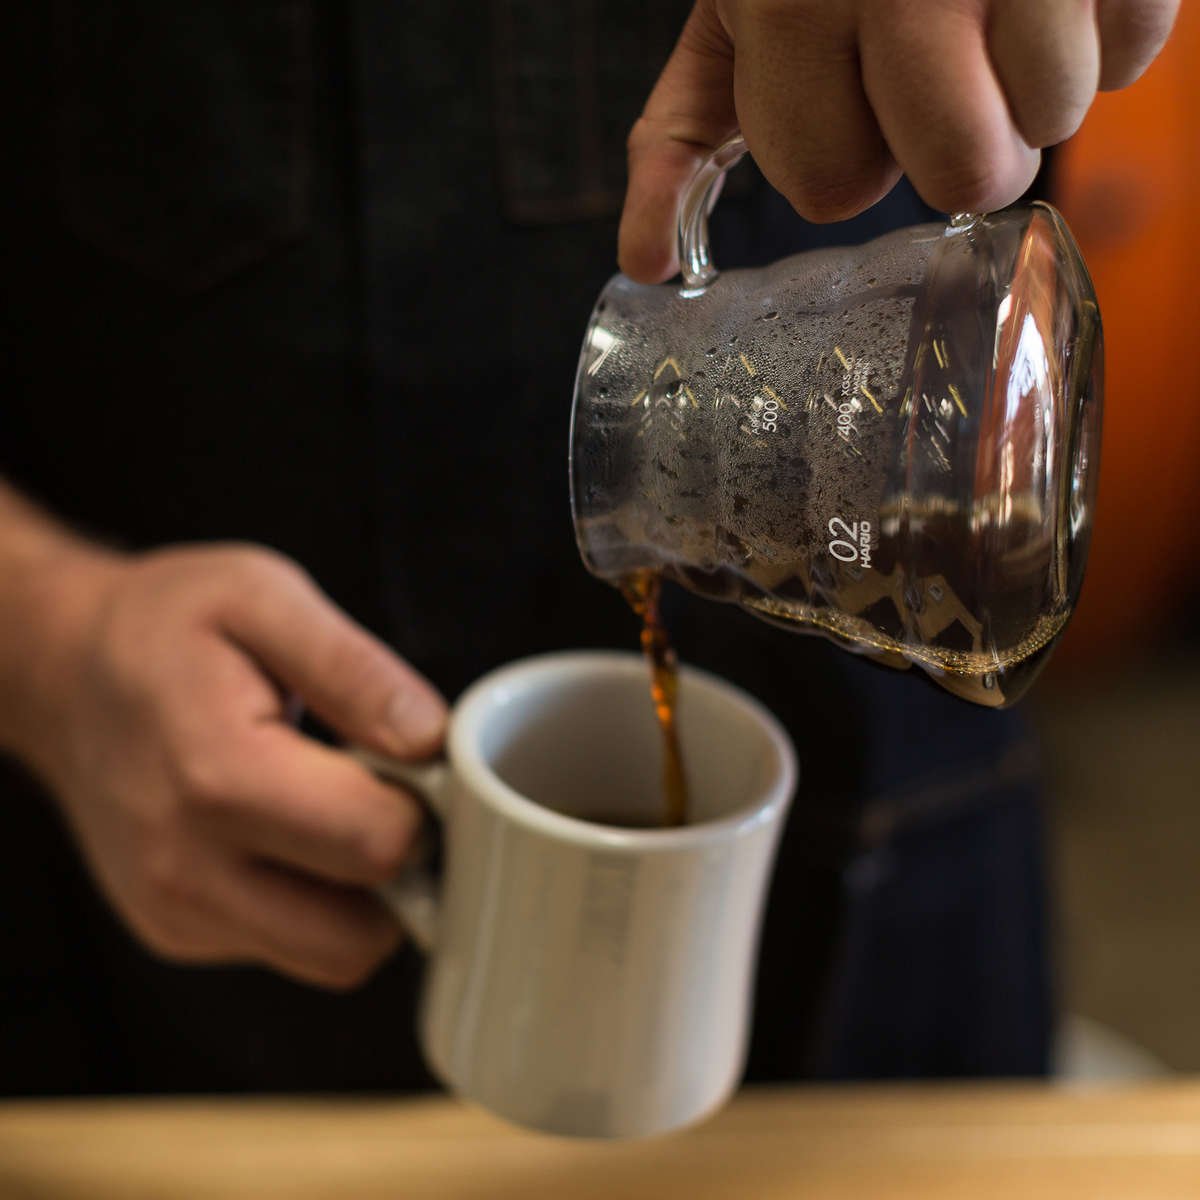 Pouring coffee into mug